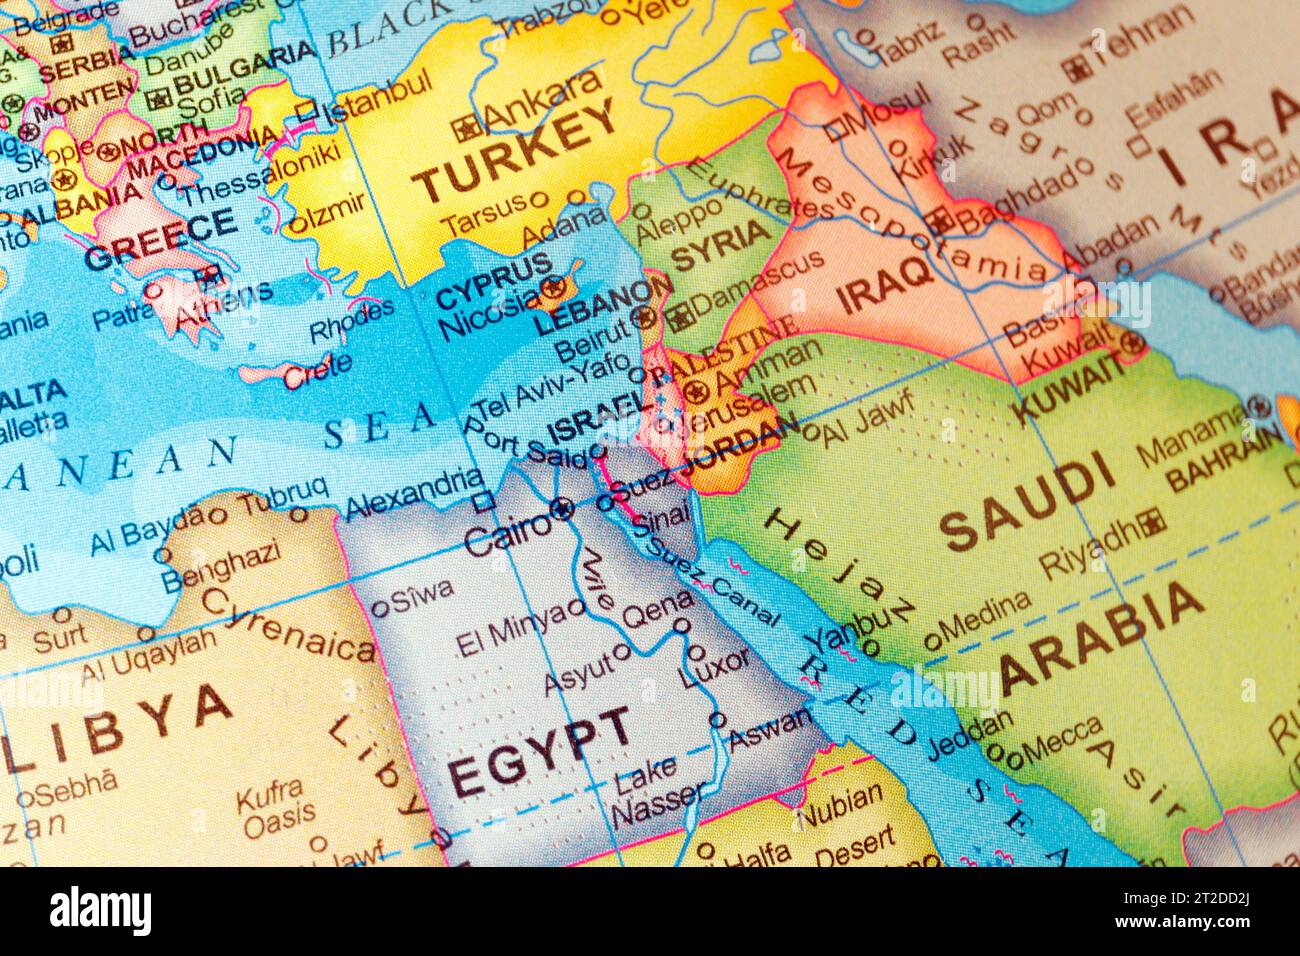 Mappa mondiale dei paesi del Medio Oriente Israele, Palestina, Giordania, Iraq, Egitto, Arabia Saudita, Siria, Libano, Sinai, Gerusalemme, Tel Aviv in primo piano. Foto Stock